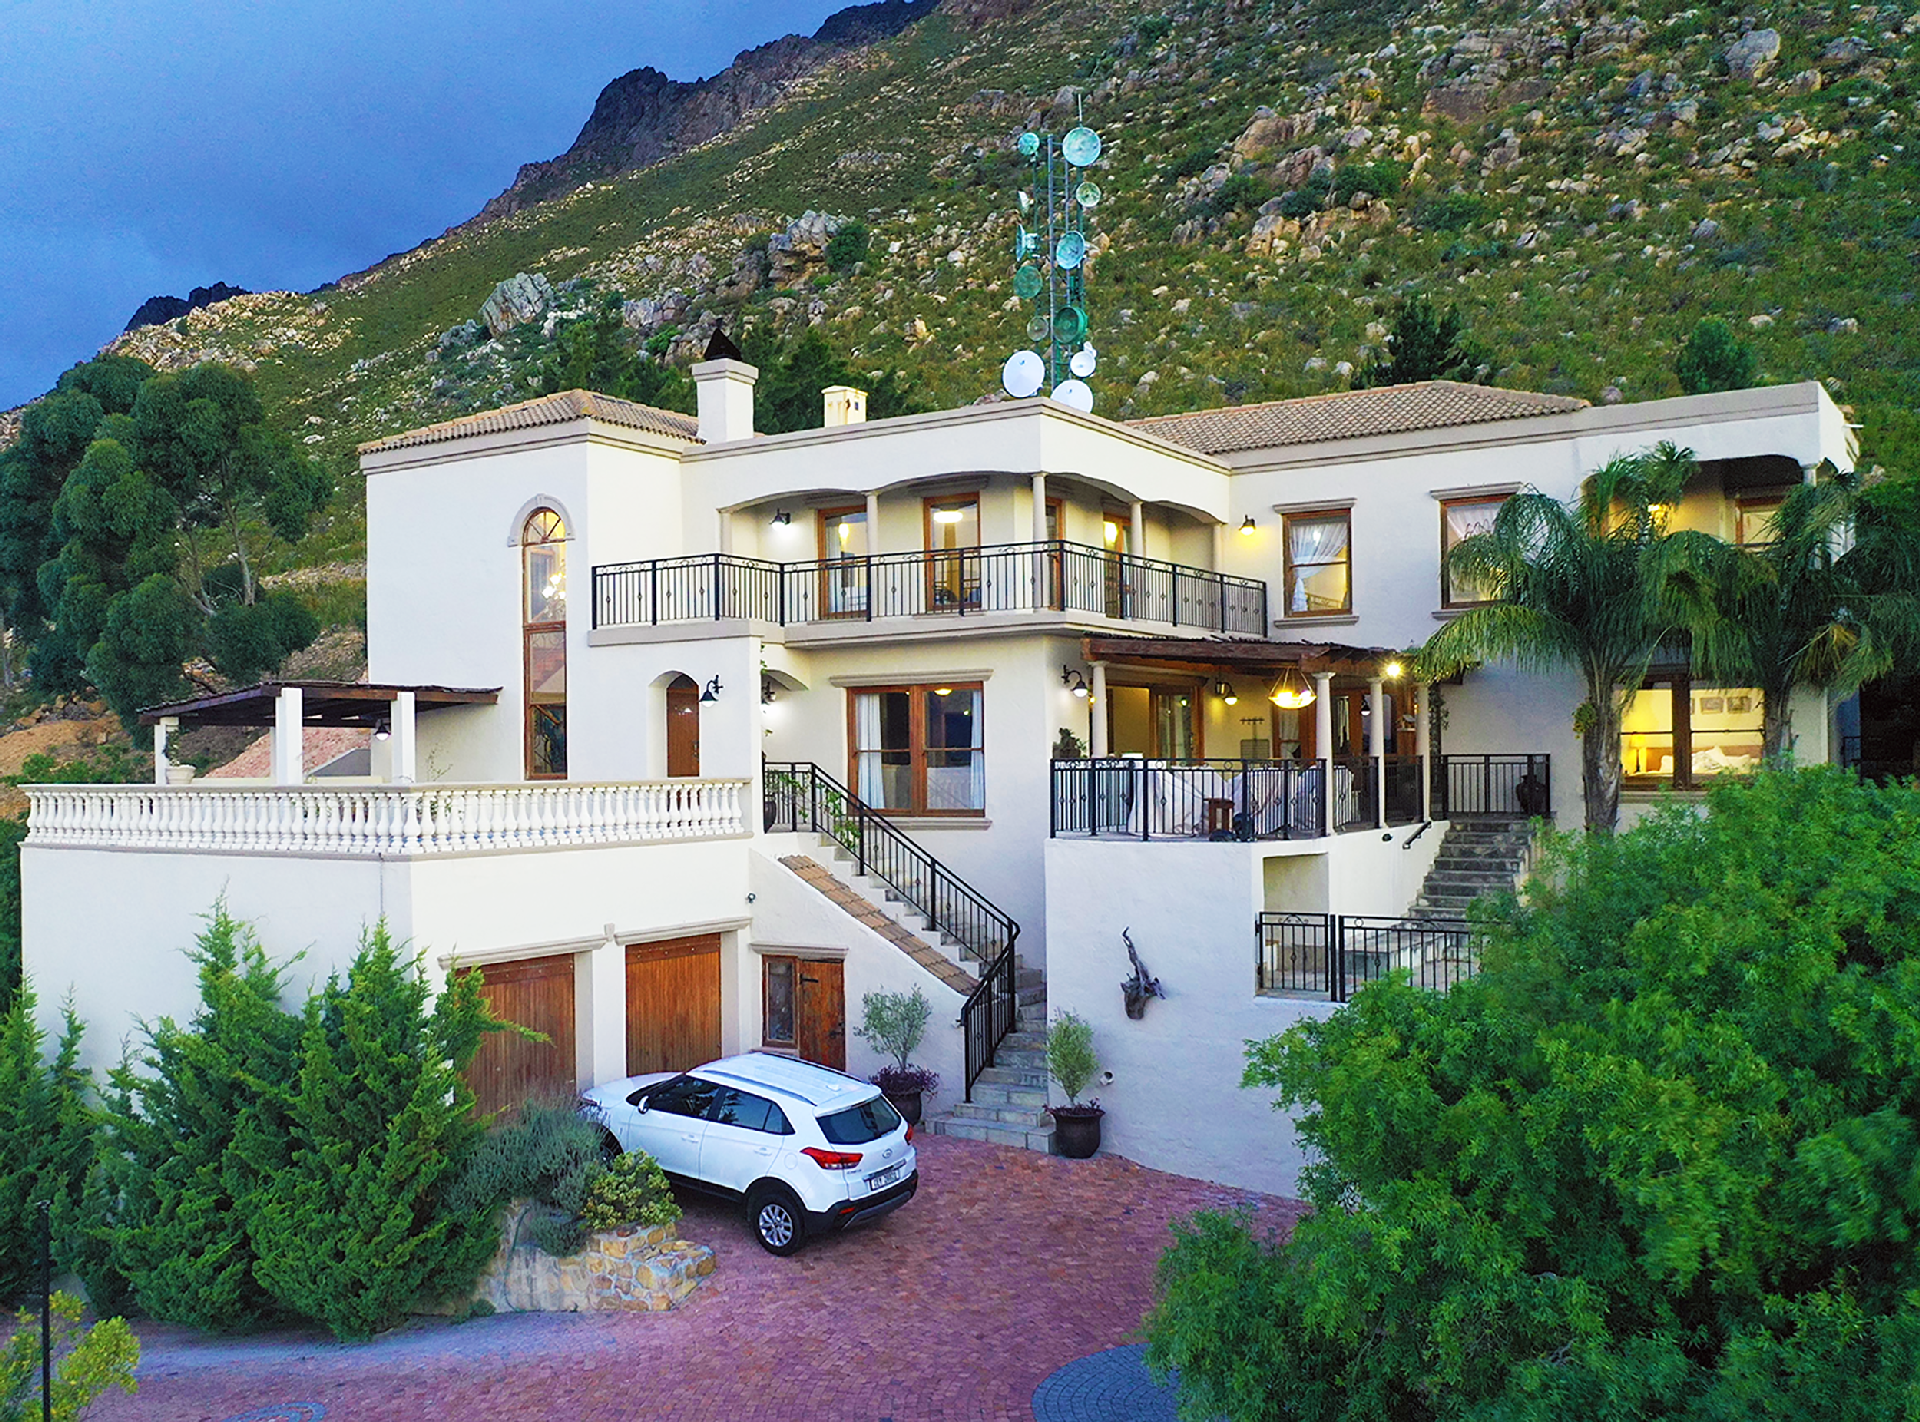 Ferienhaus mit Privatpool für 16 Personen ca. Ferienhaus in Südafrika